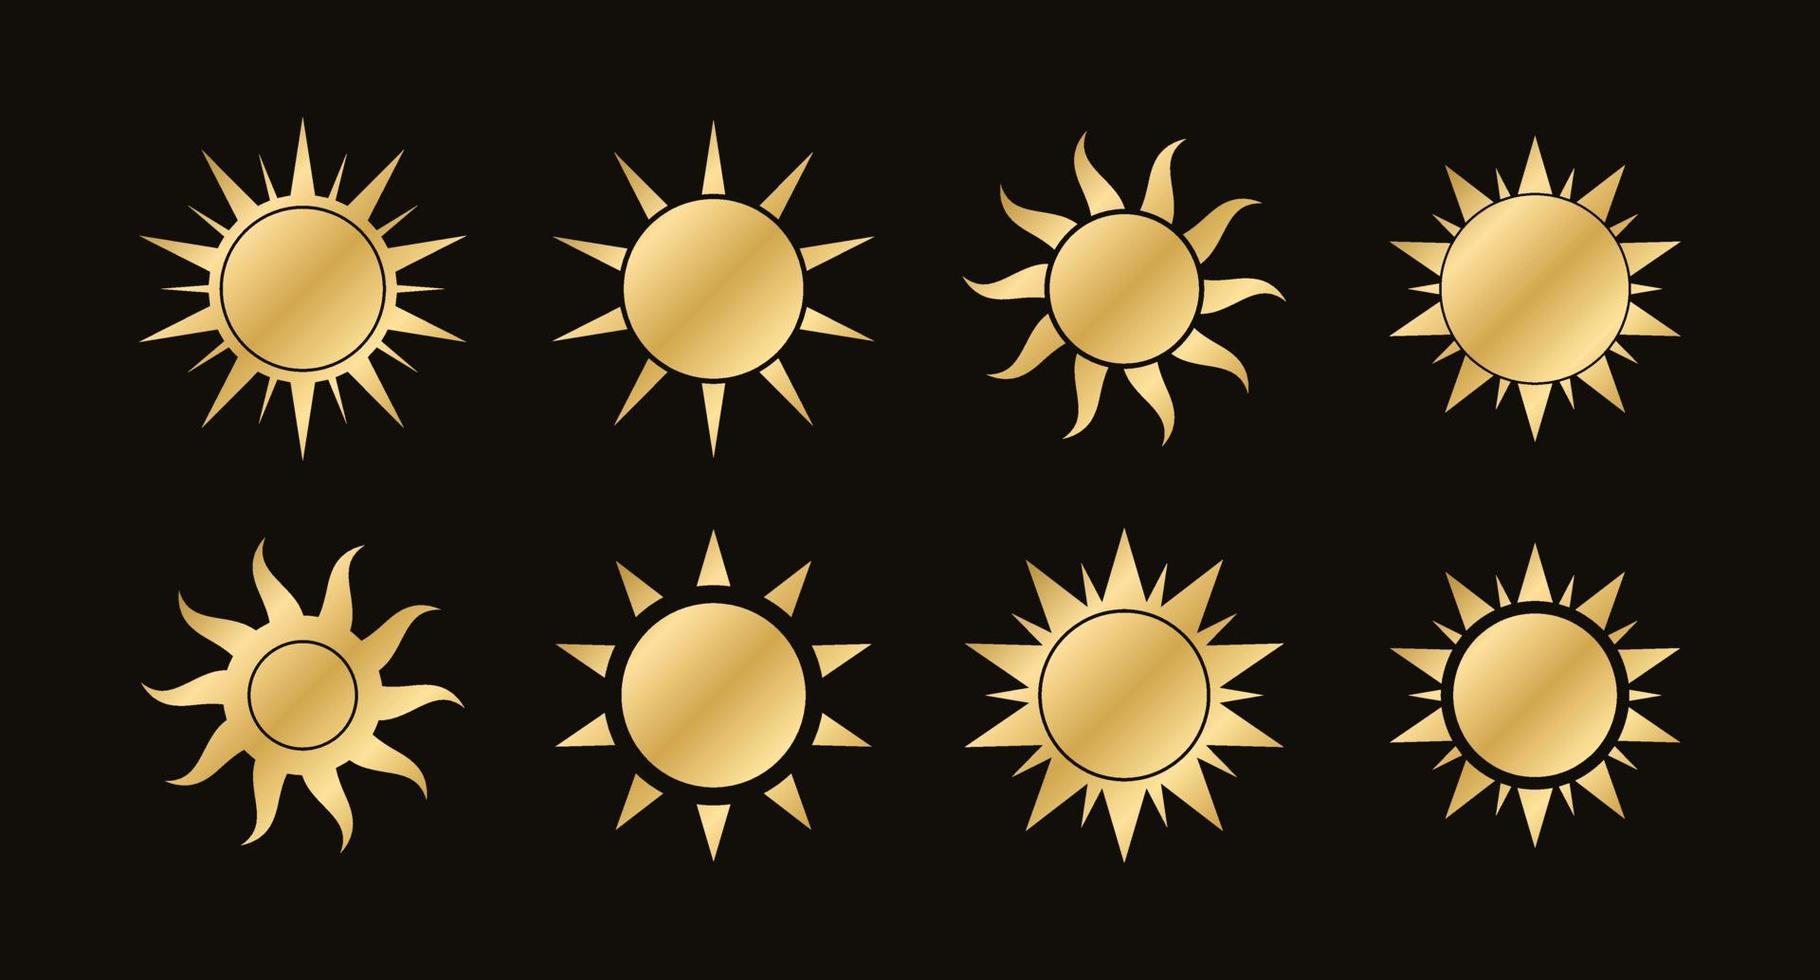 Golden boho celestial sun icon logo set. Simple modern abstract design for templates, prints, web, social media posts vector